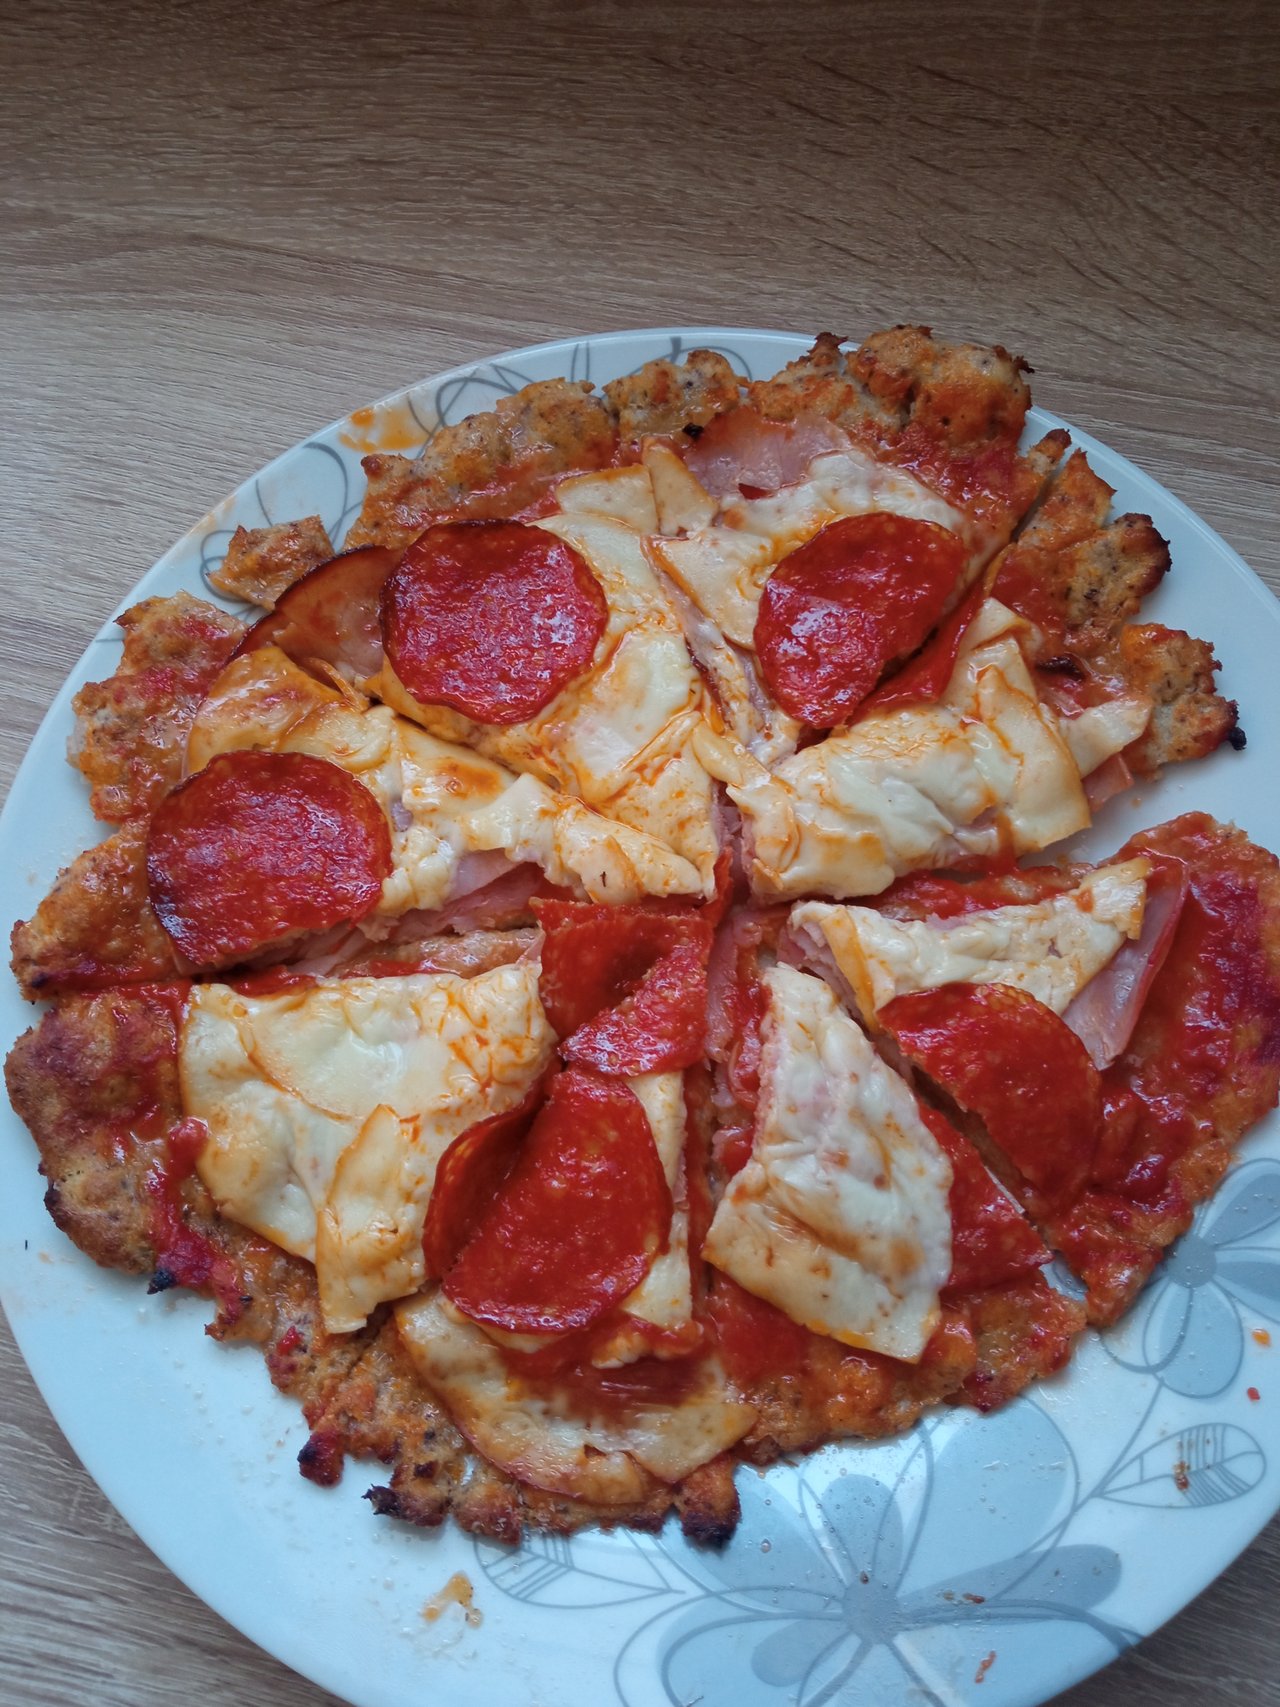 Moja prvá keto pizza (kto chce recept nech mi napíše) a nabudúce snáď bude vyzerať lepšie.